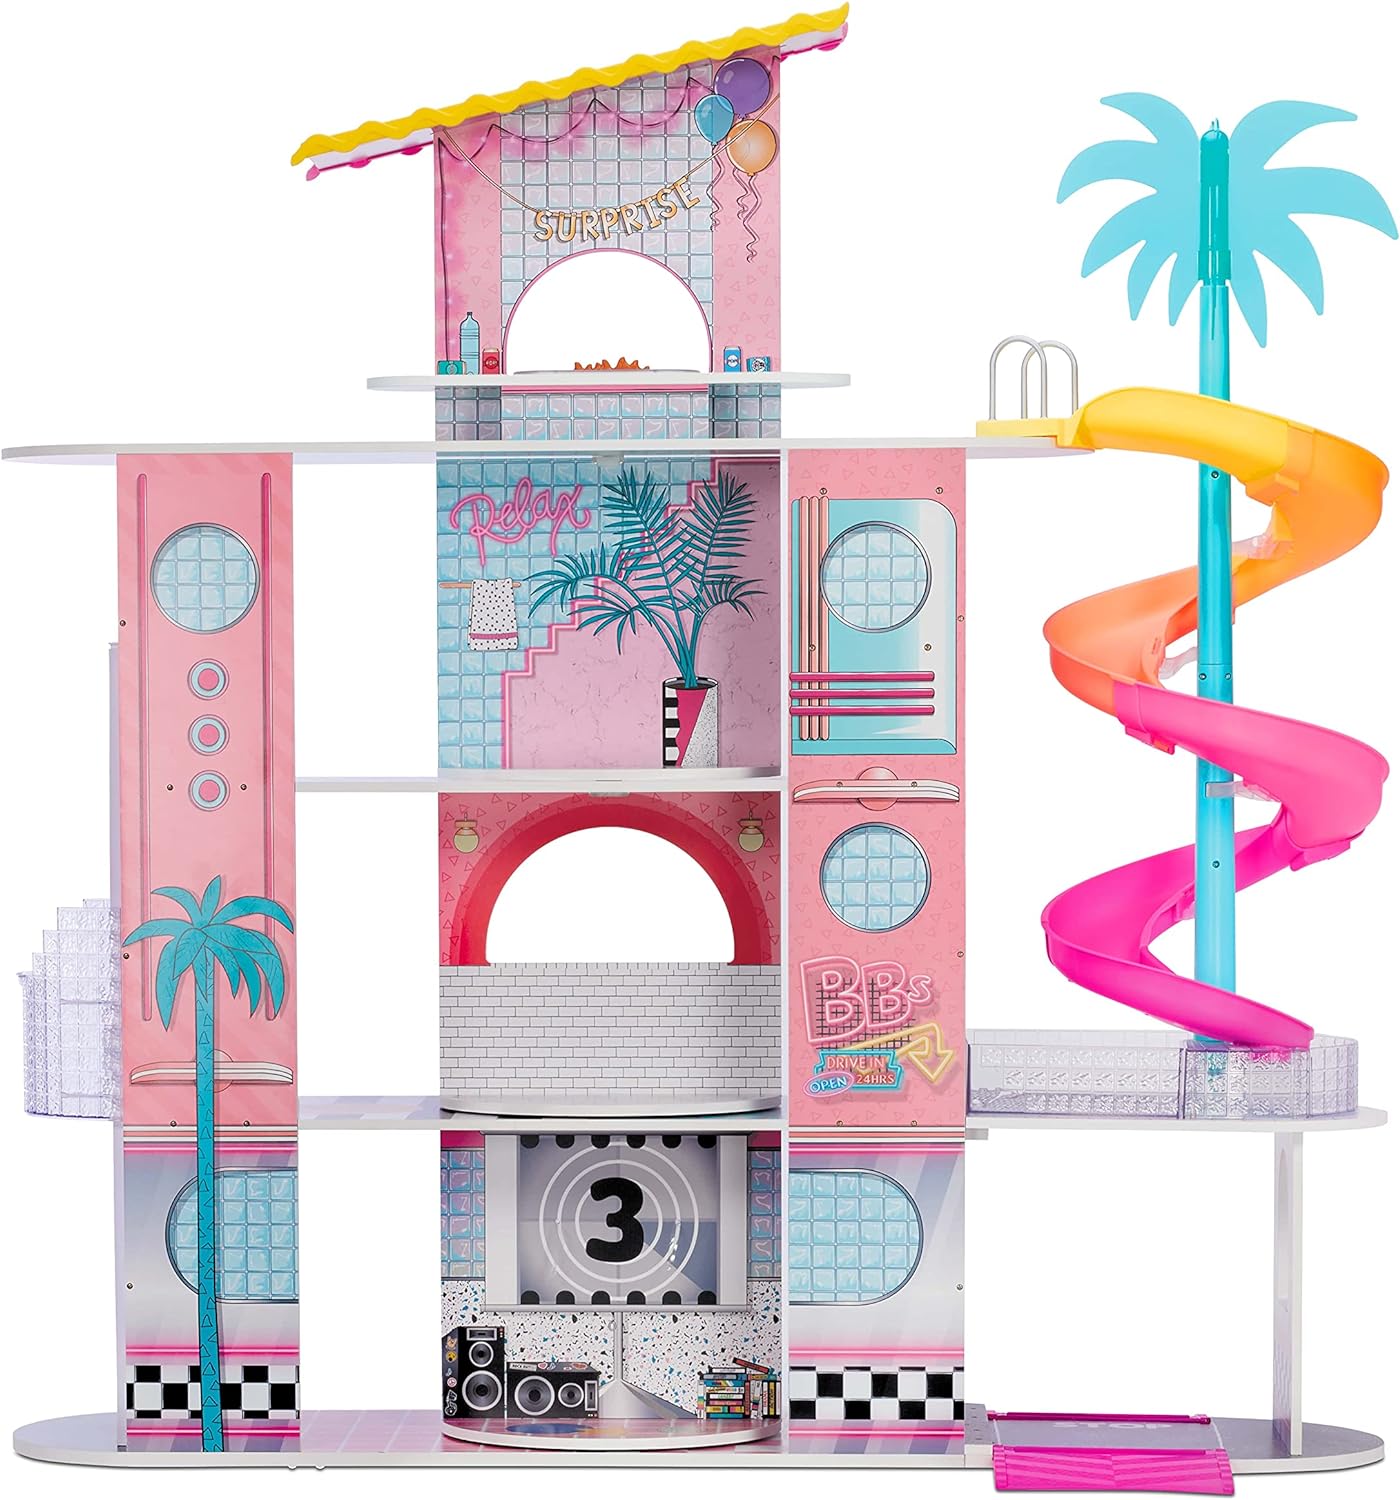 L.O.L. Surprise Conjunto de jogos OMG Fashion House com mais de 85 surpresas - casa de bonecas de madeira real com piscina, escorregador em espiral, pátio na cobertura, cinema, móveis transformadores e muito mais - ótimo para crianças a partir de 4 anos